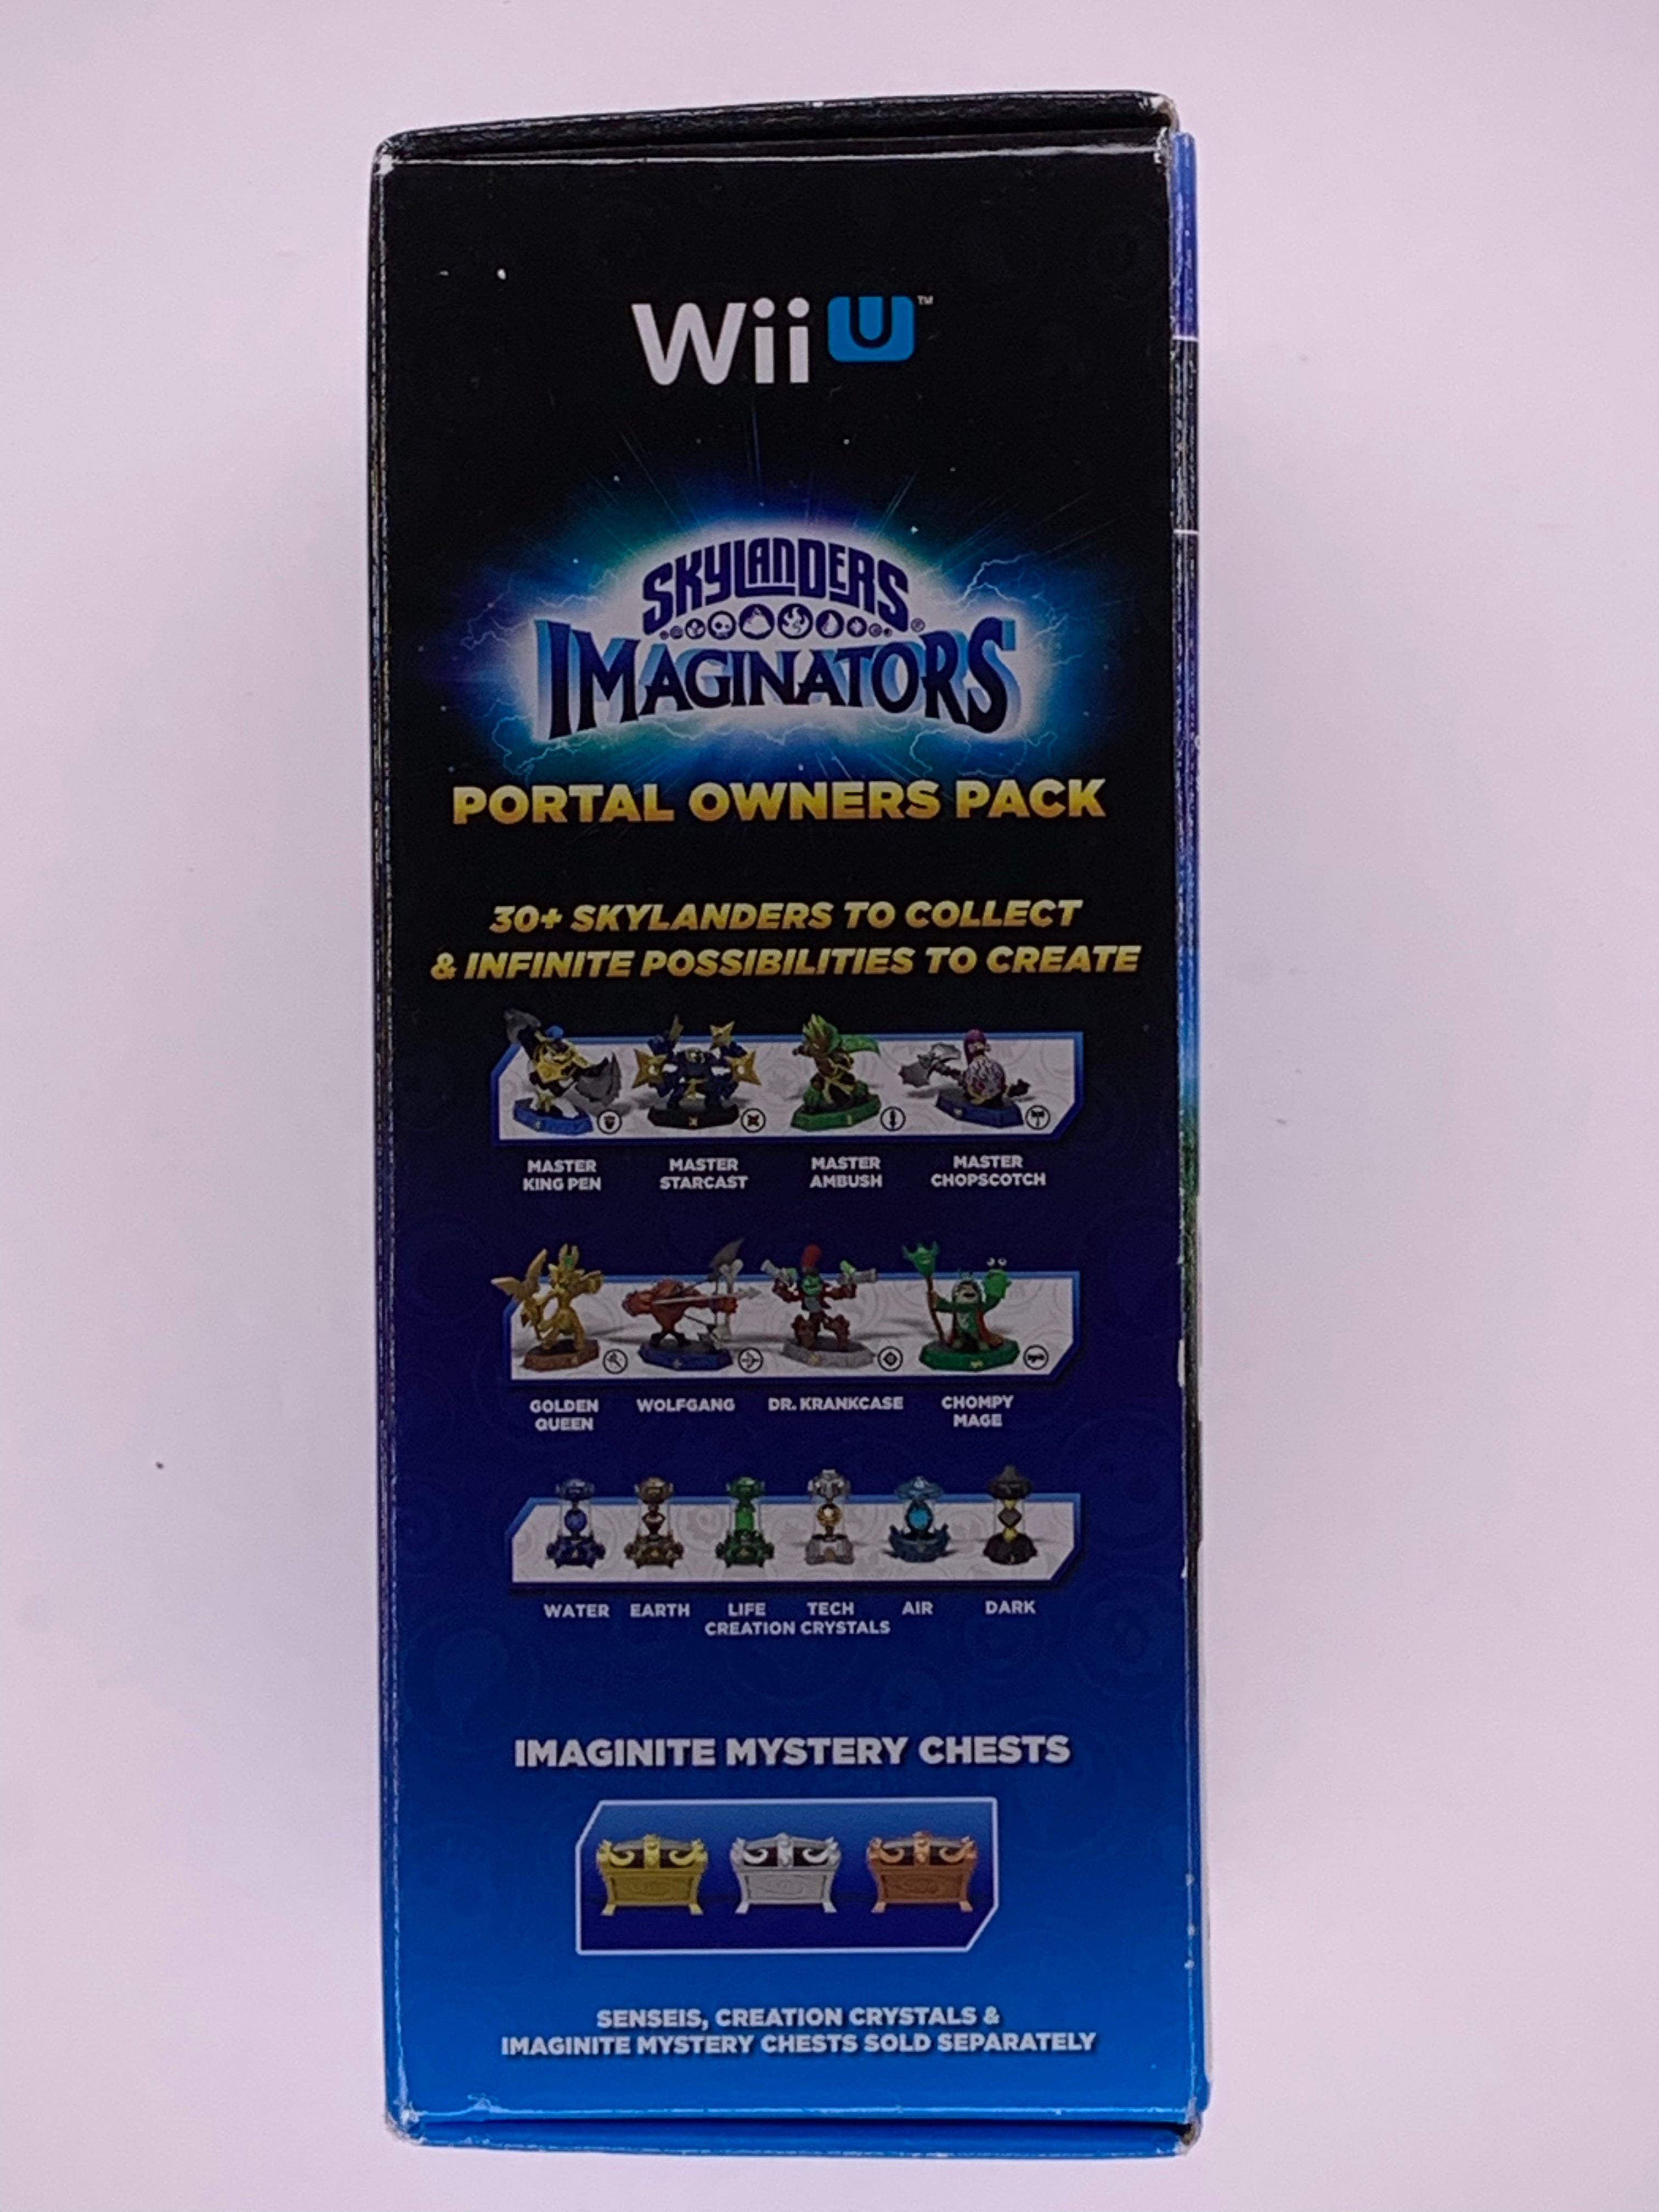 SkyLanders Imaginators Wii U Portal Owners Pack Create Your Own Video Games